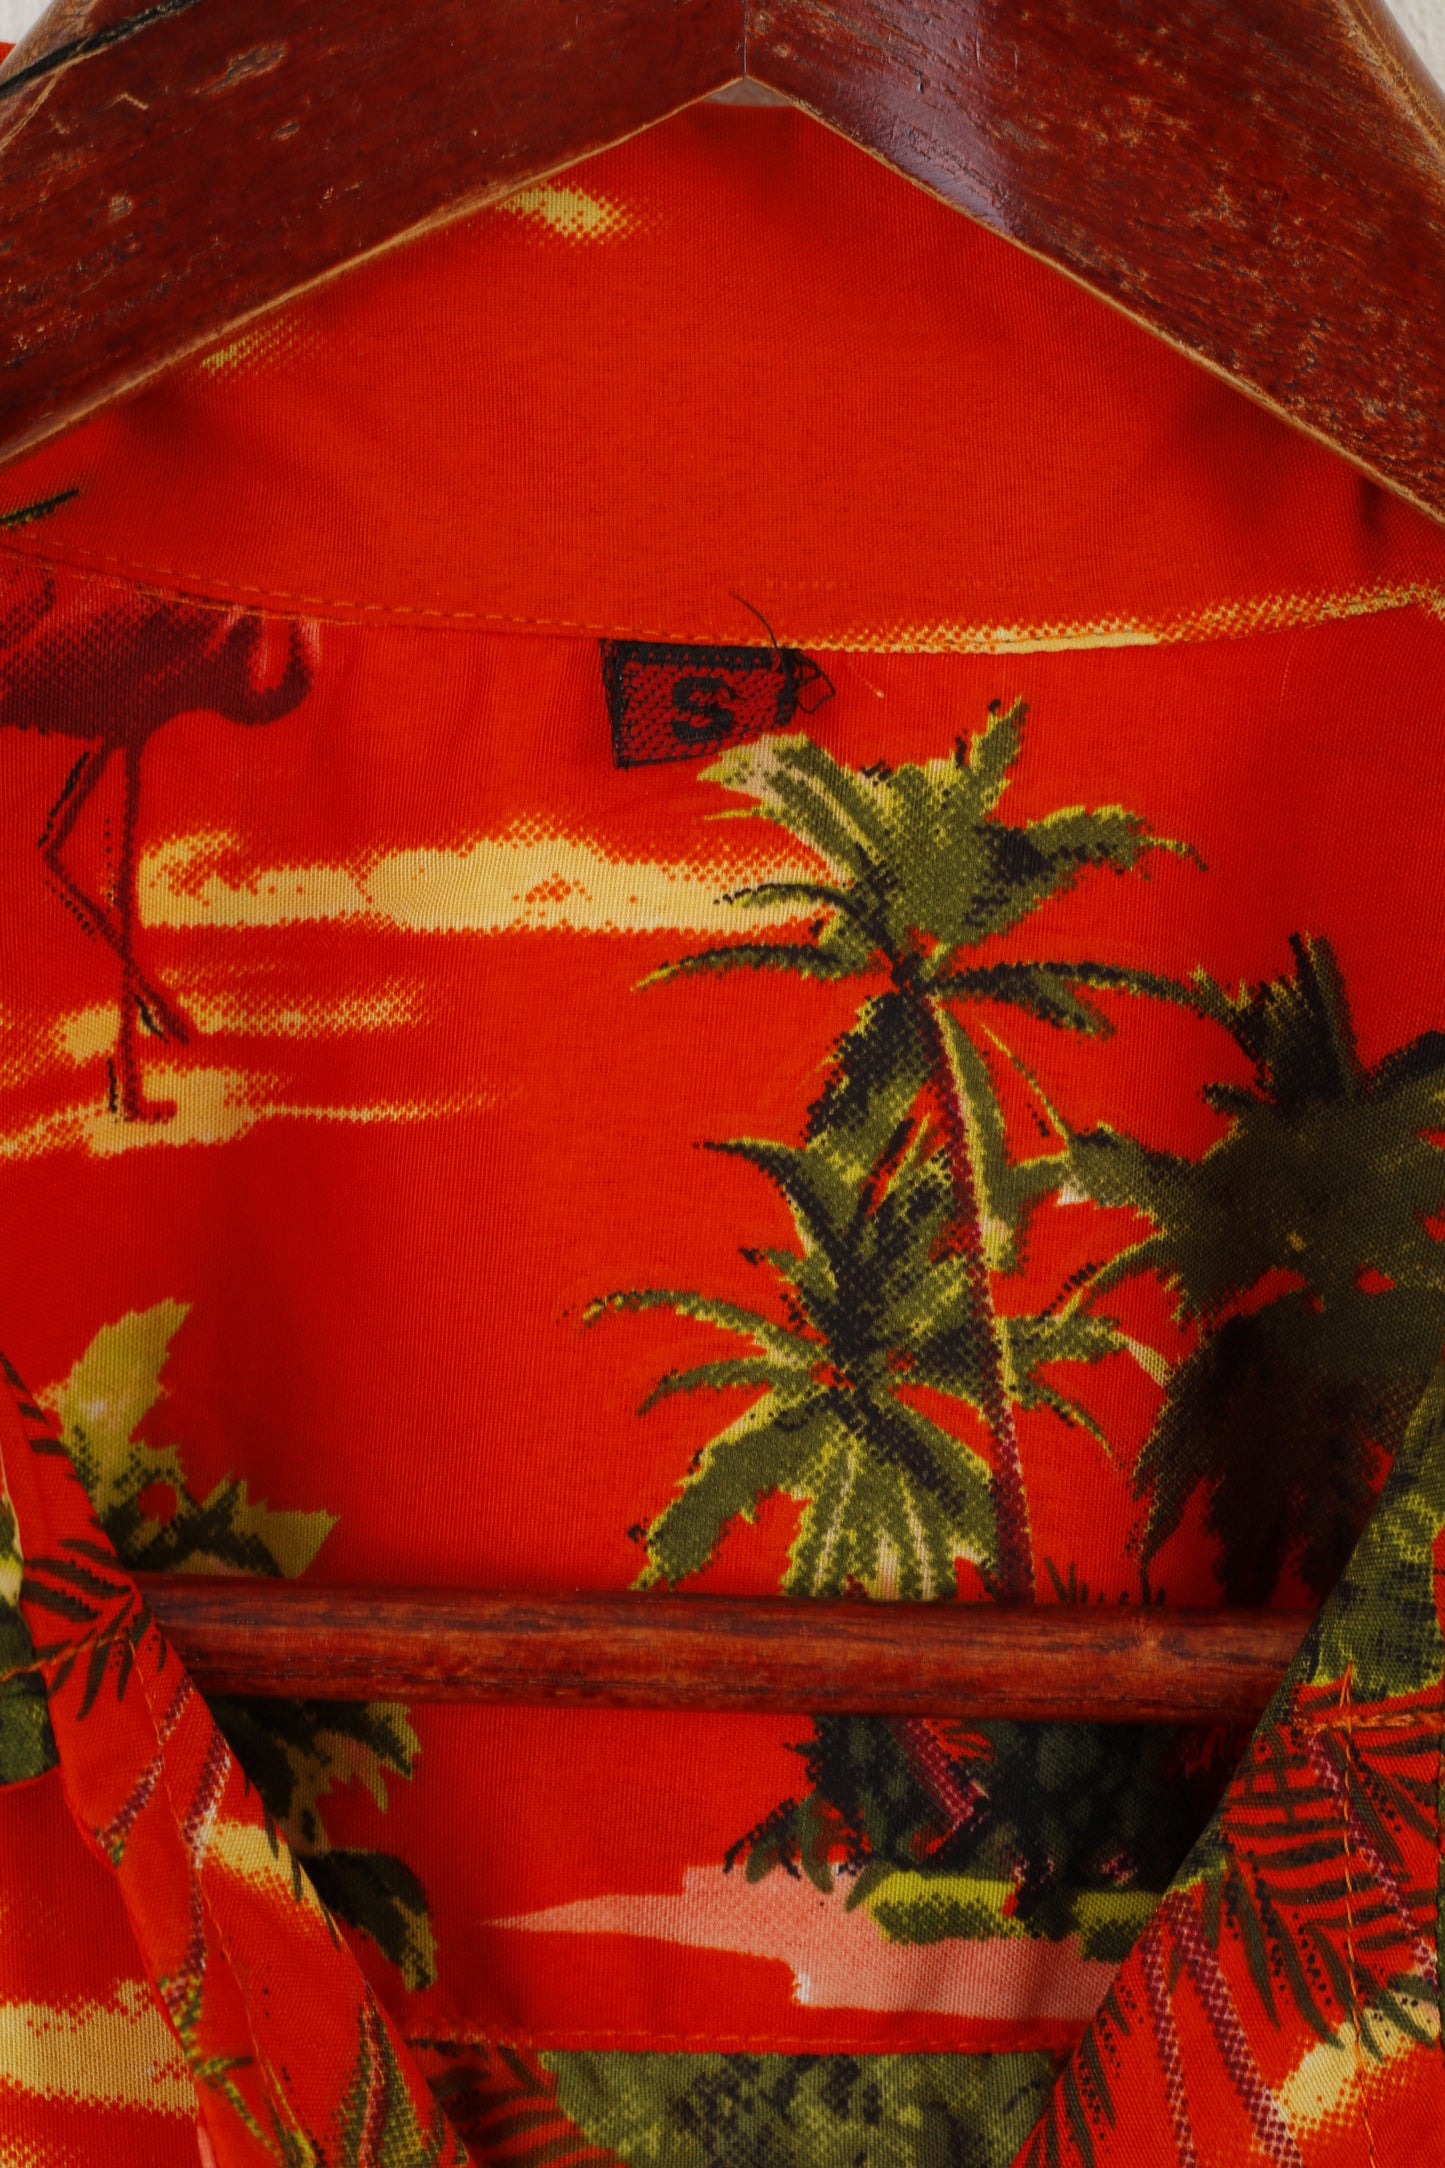 Camicia casual da uomo vintage Top estivo stampato con palme tascabili arancioni lucide